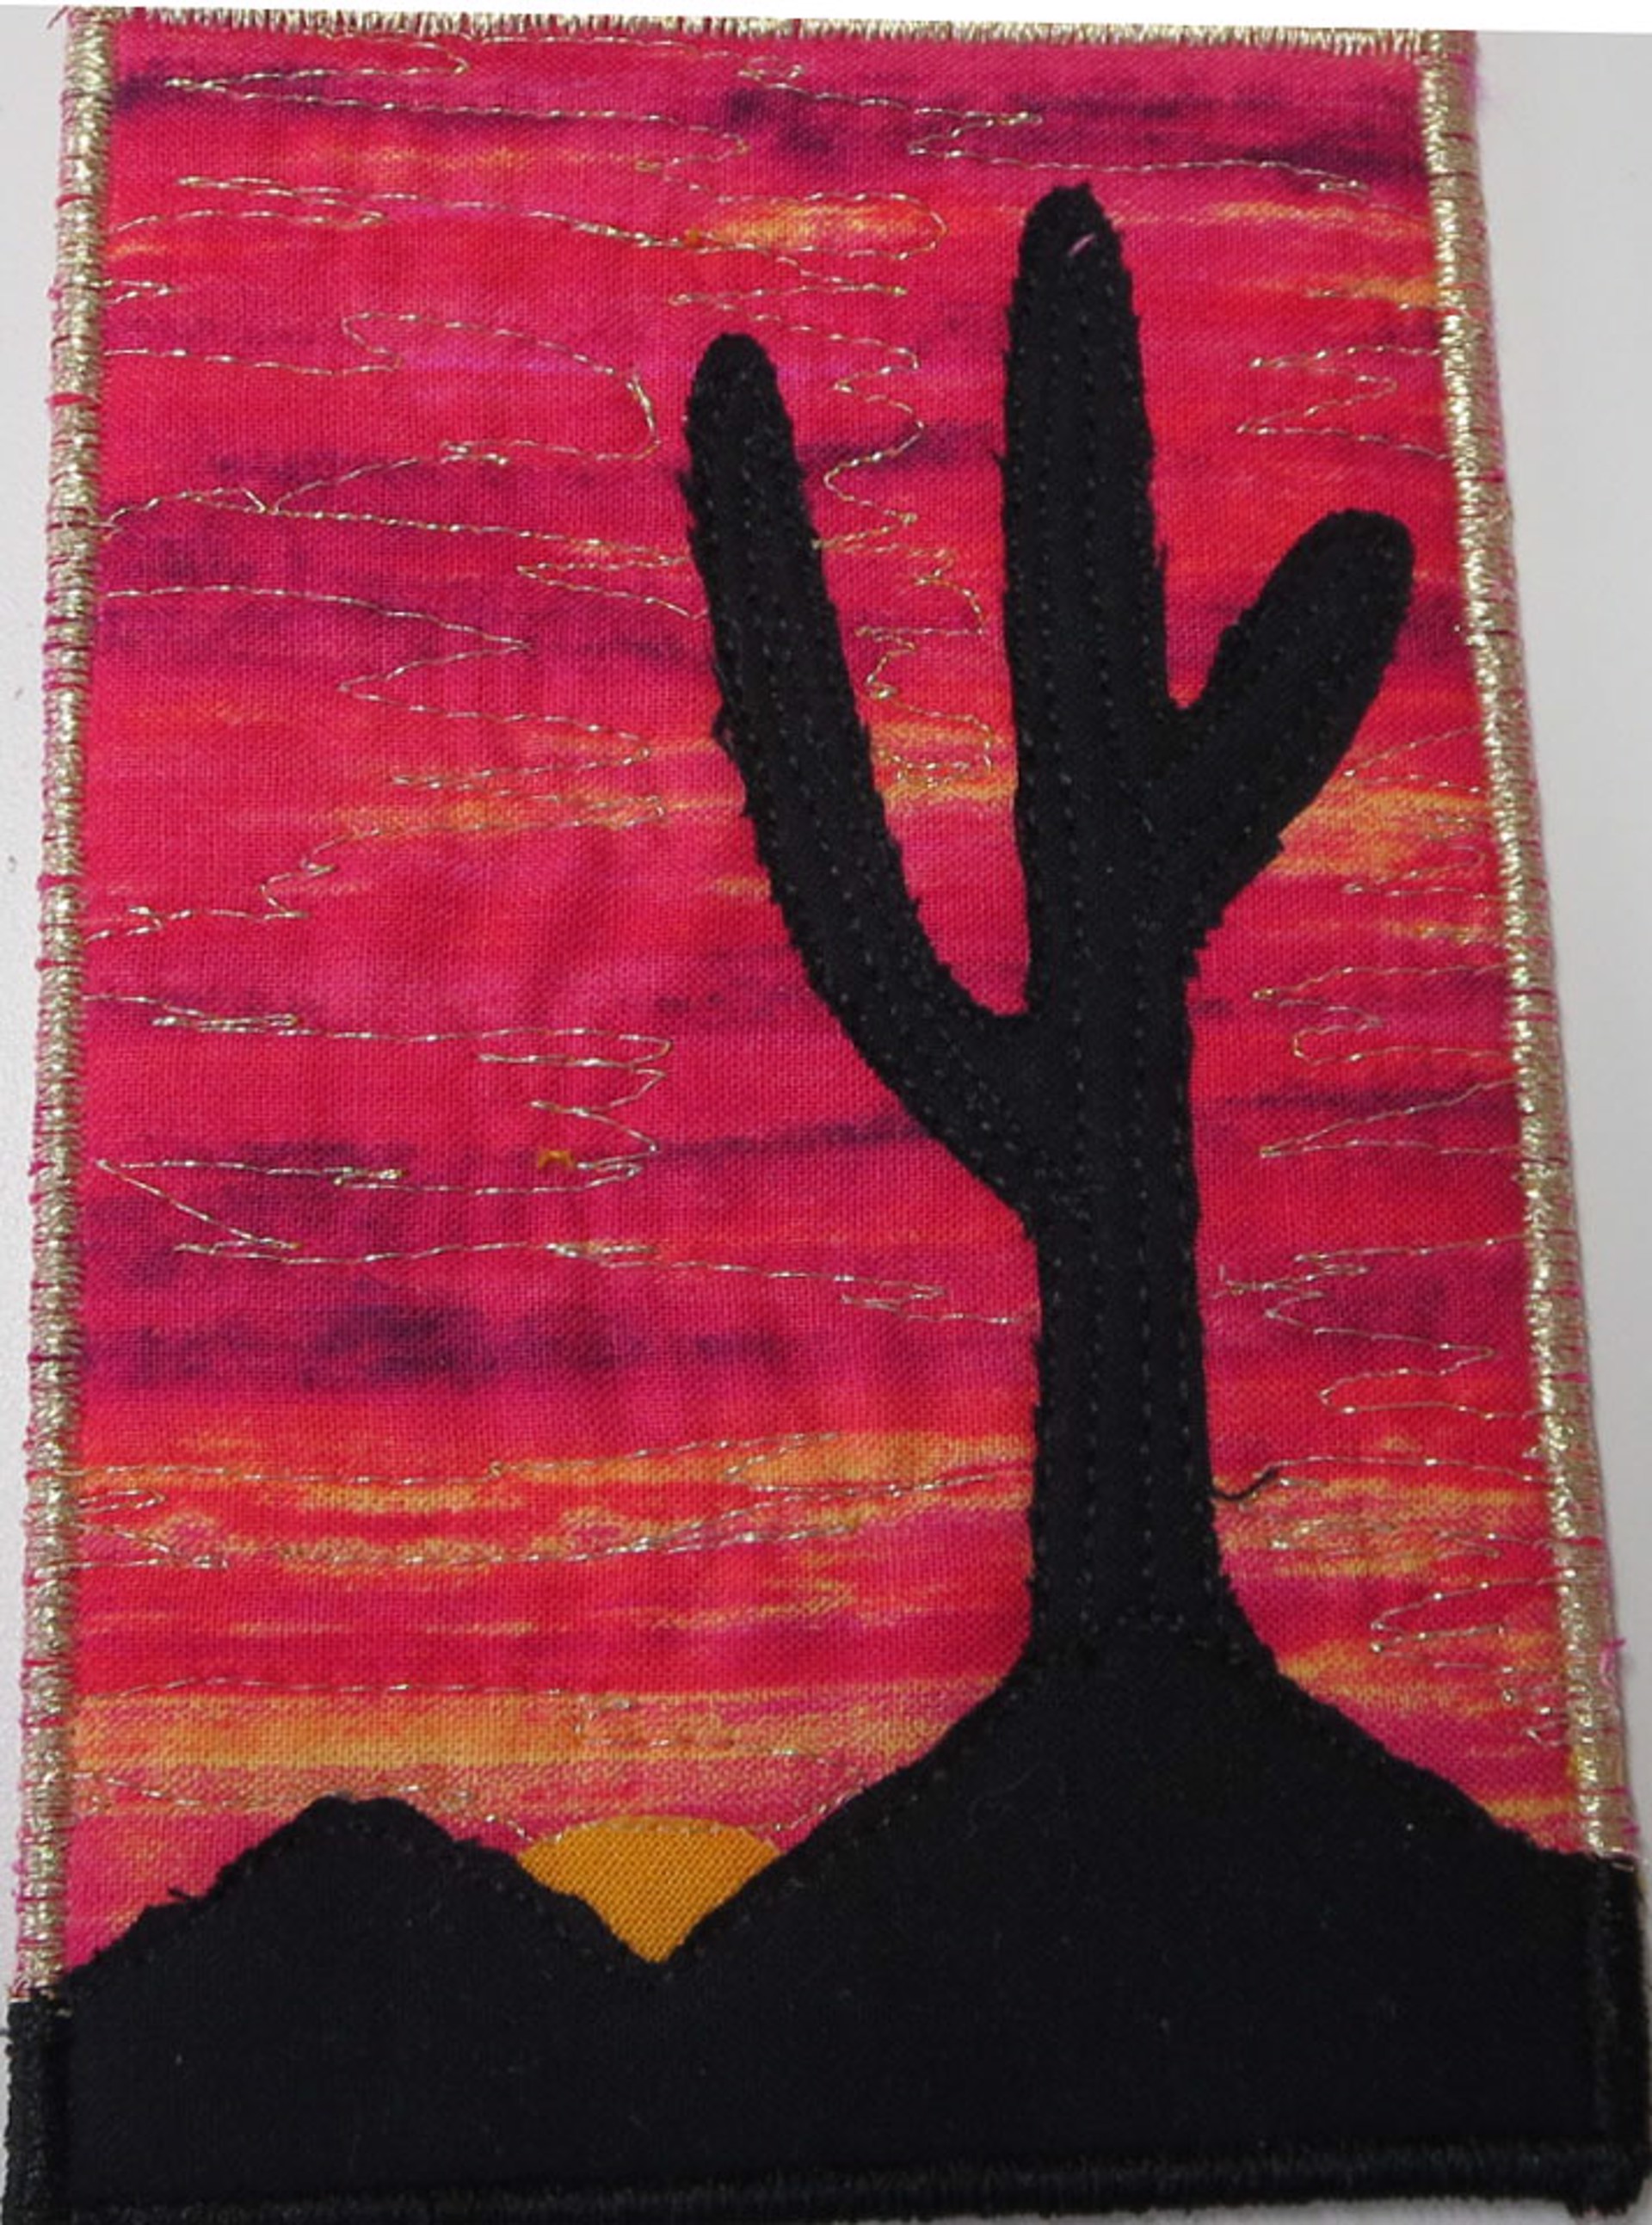 Saguaro @ Sunset 2 by Cheryl Langer